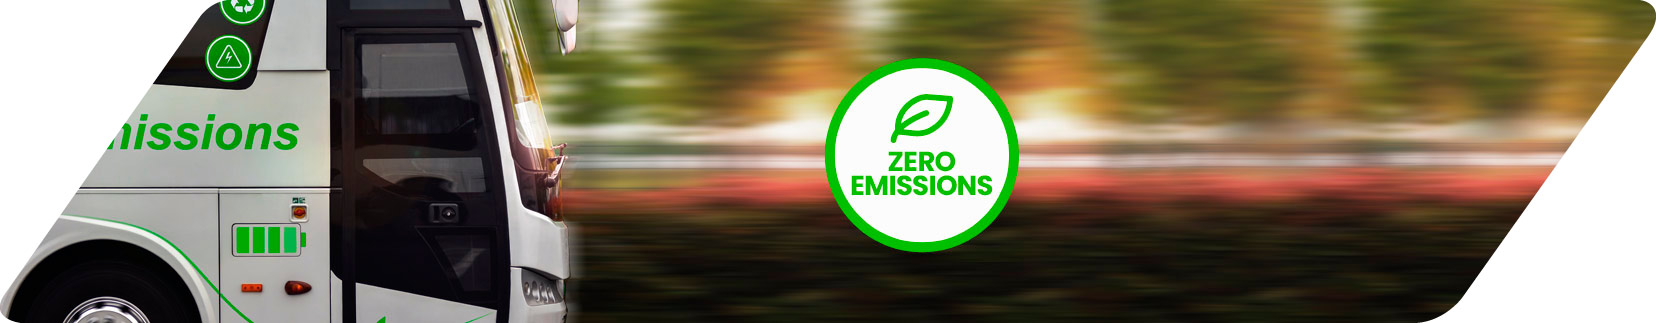 Camino cero emisiones